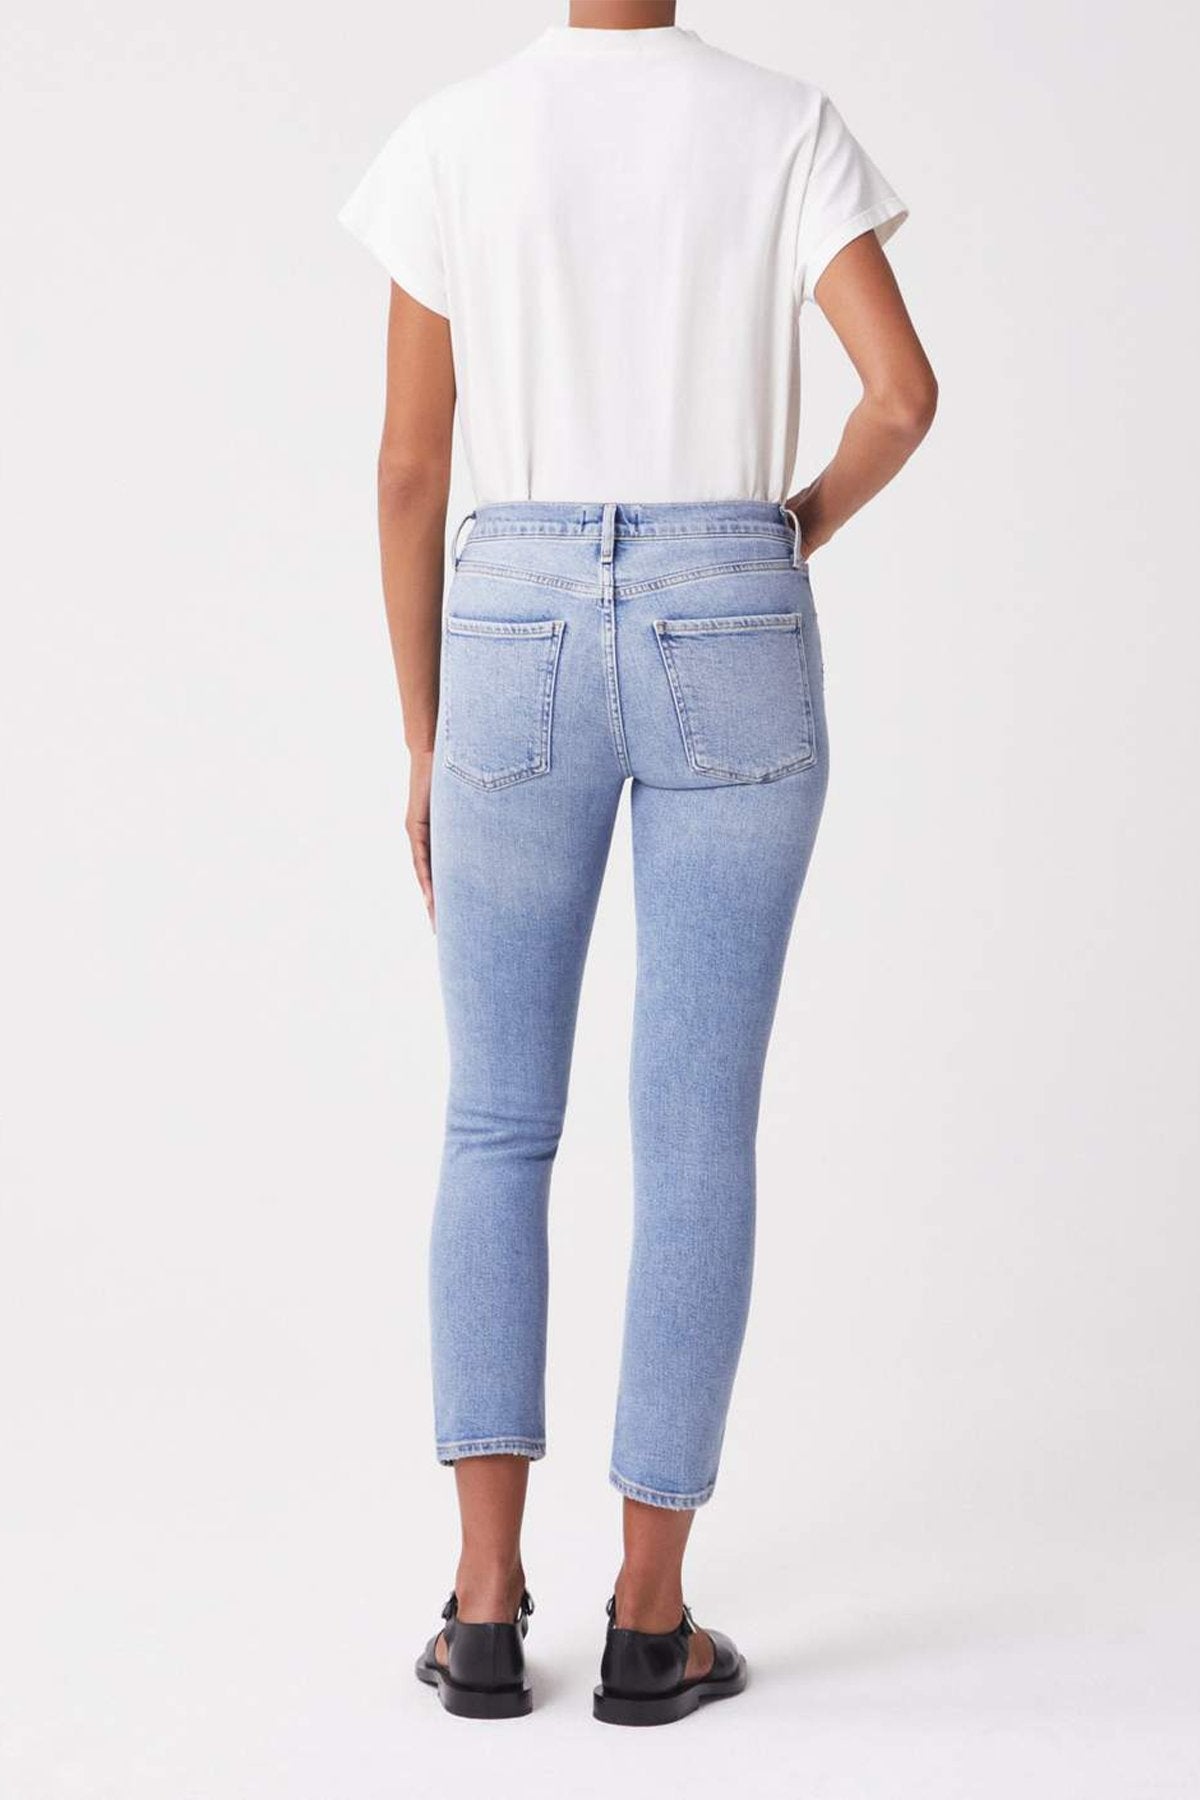 Toni Mid Rise Straight Jean in Precipice - shop-olivia.com